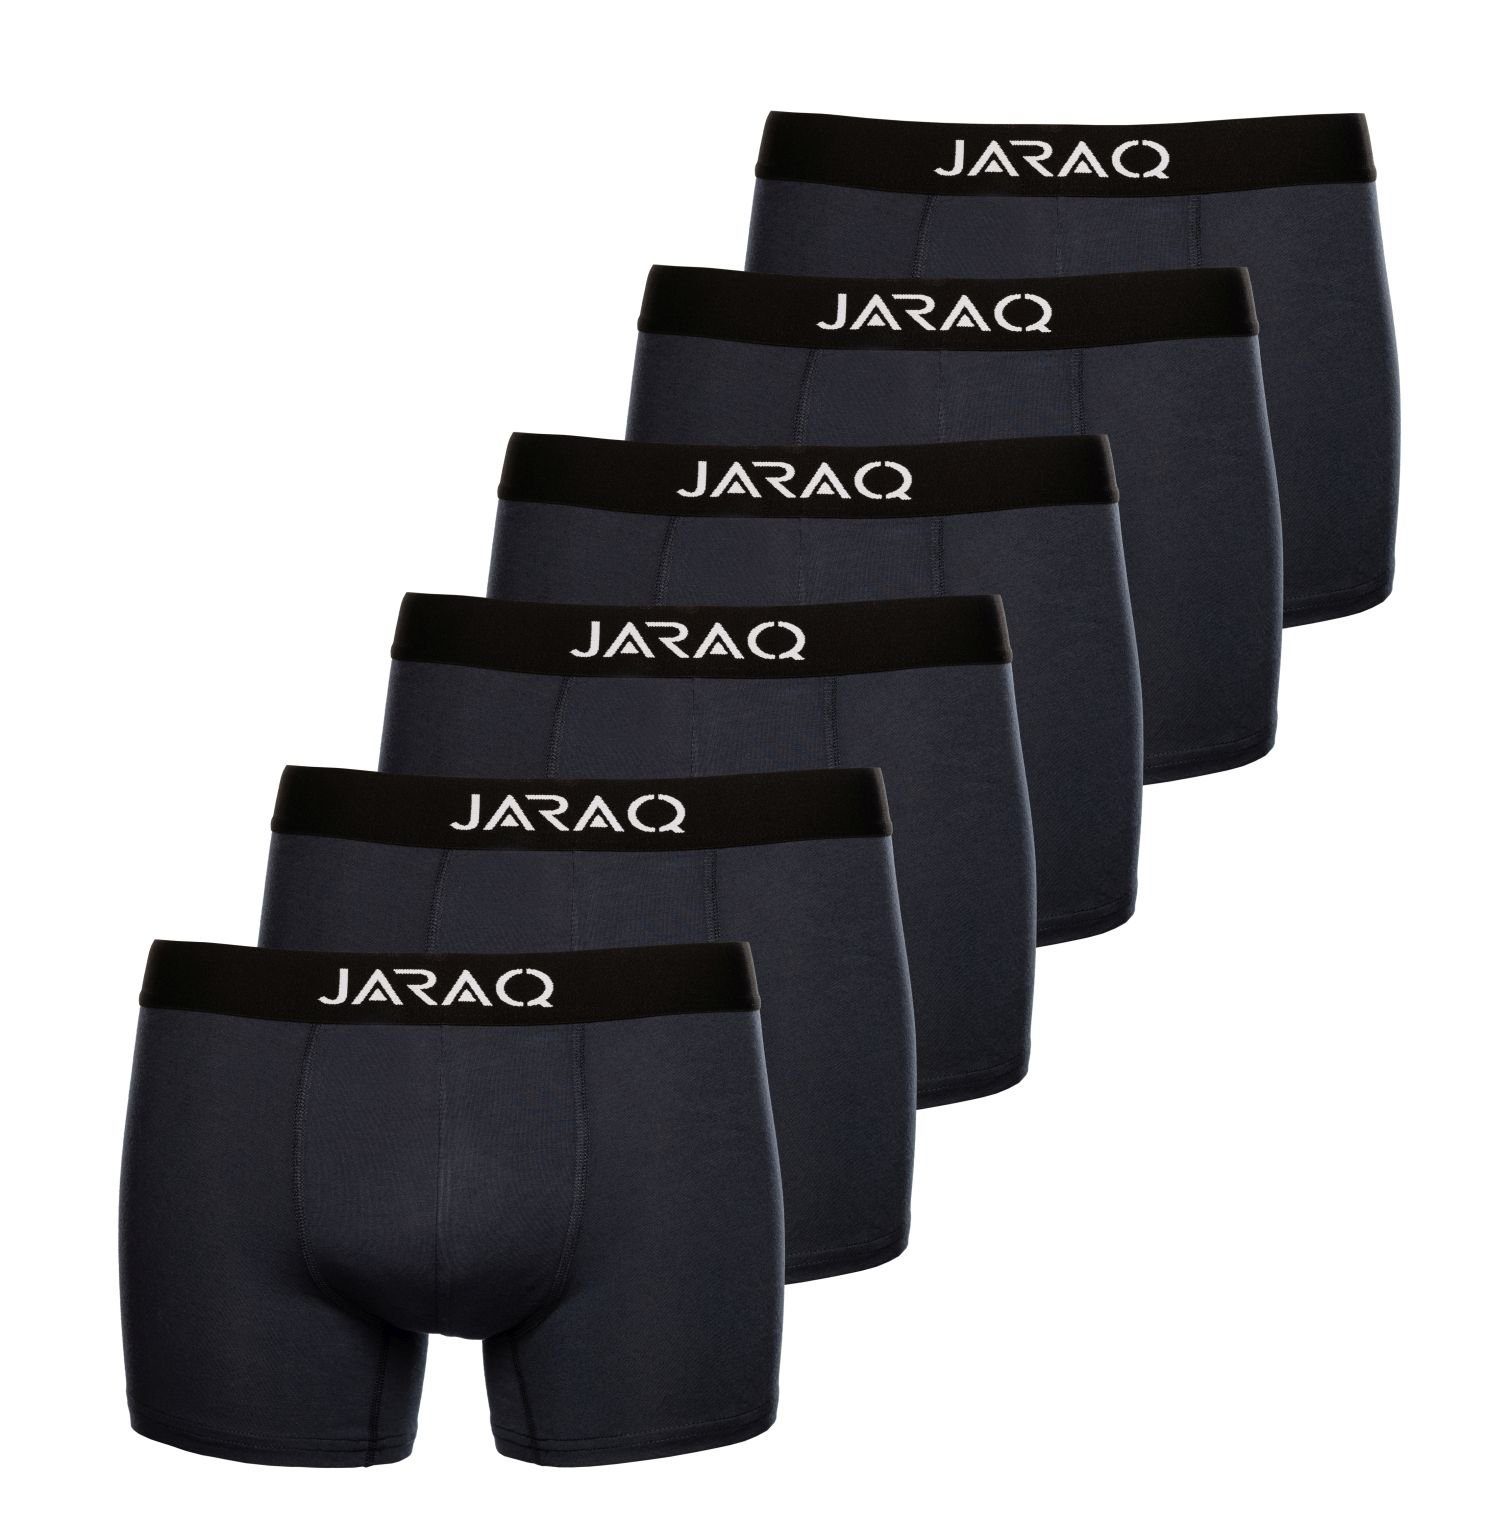 JARAQ Boxer JARAQ Bambus Boxershorts Herren 6er Pack Perfekte Passform Unterhosen für Männer S - 4XL Petrol